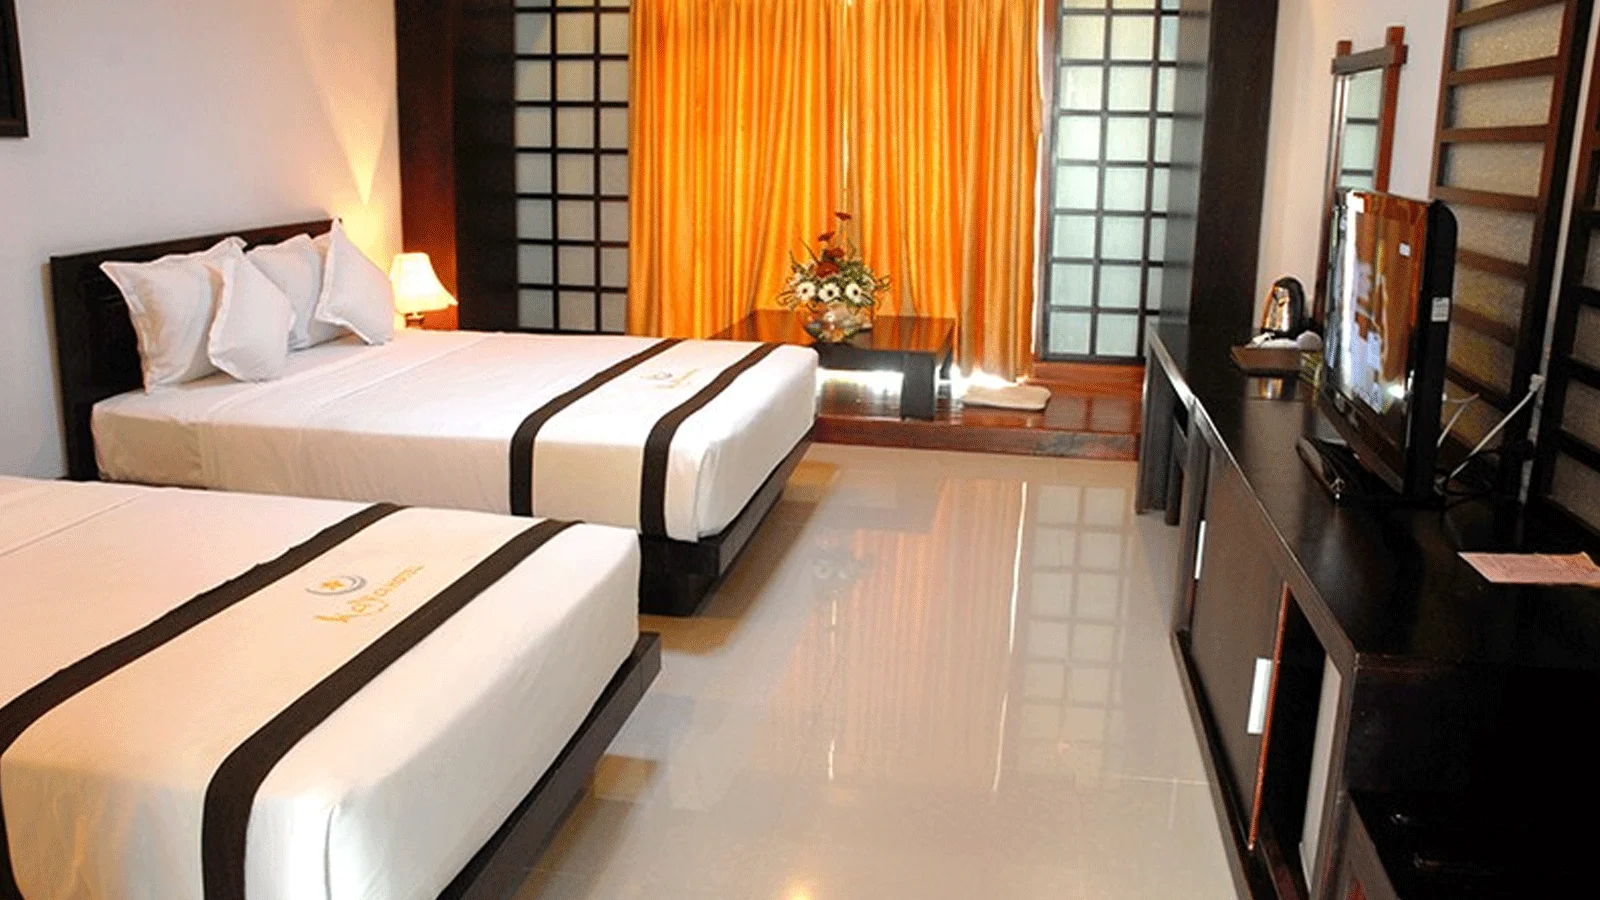 Khách sạn Kaya Hotel Phú Yên